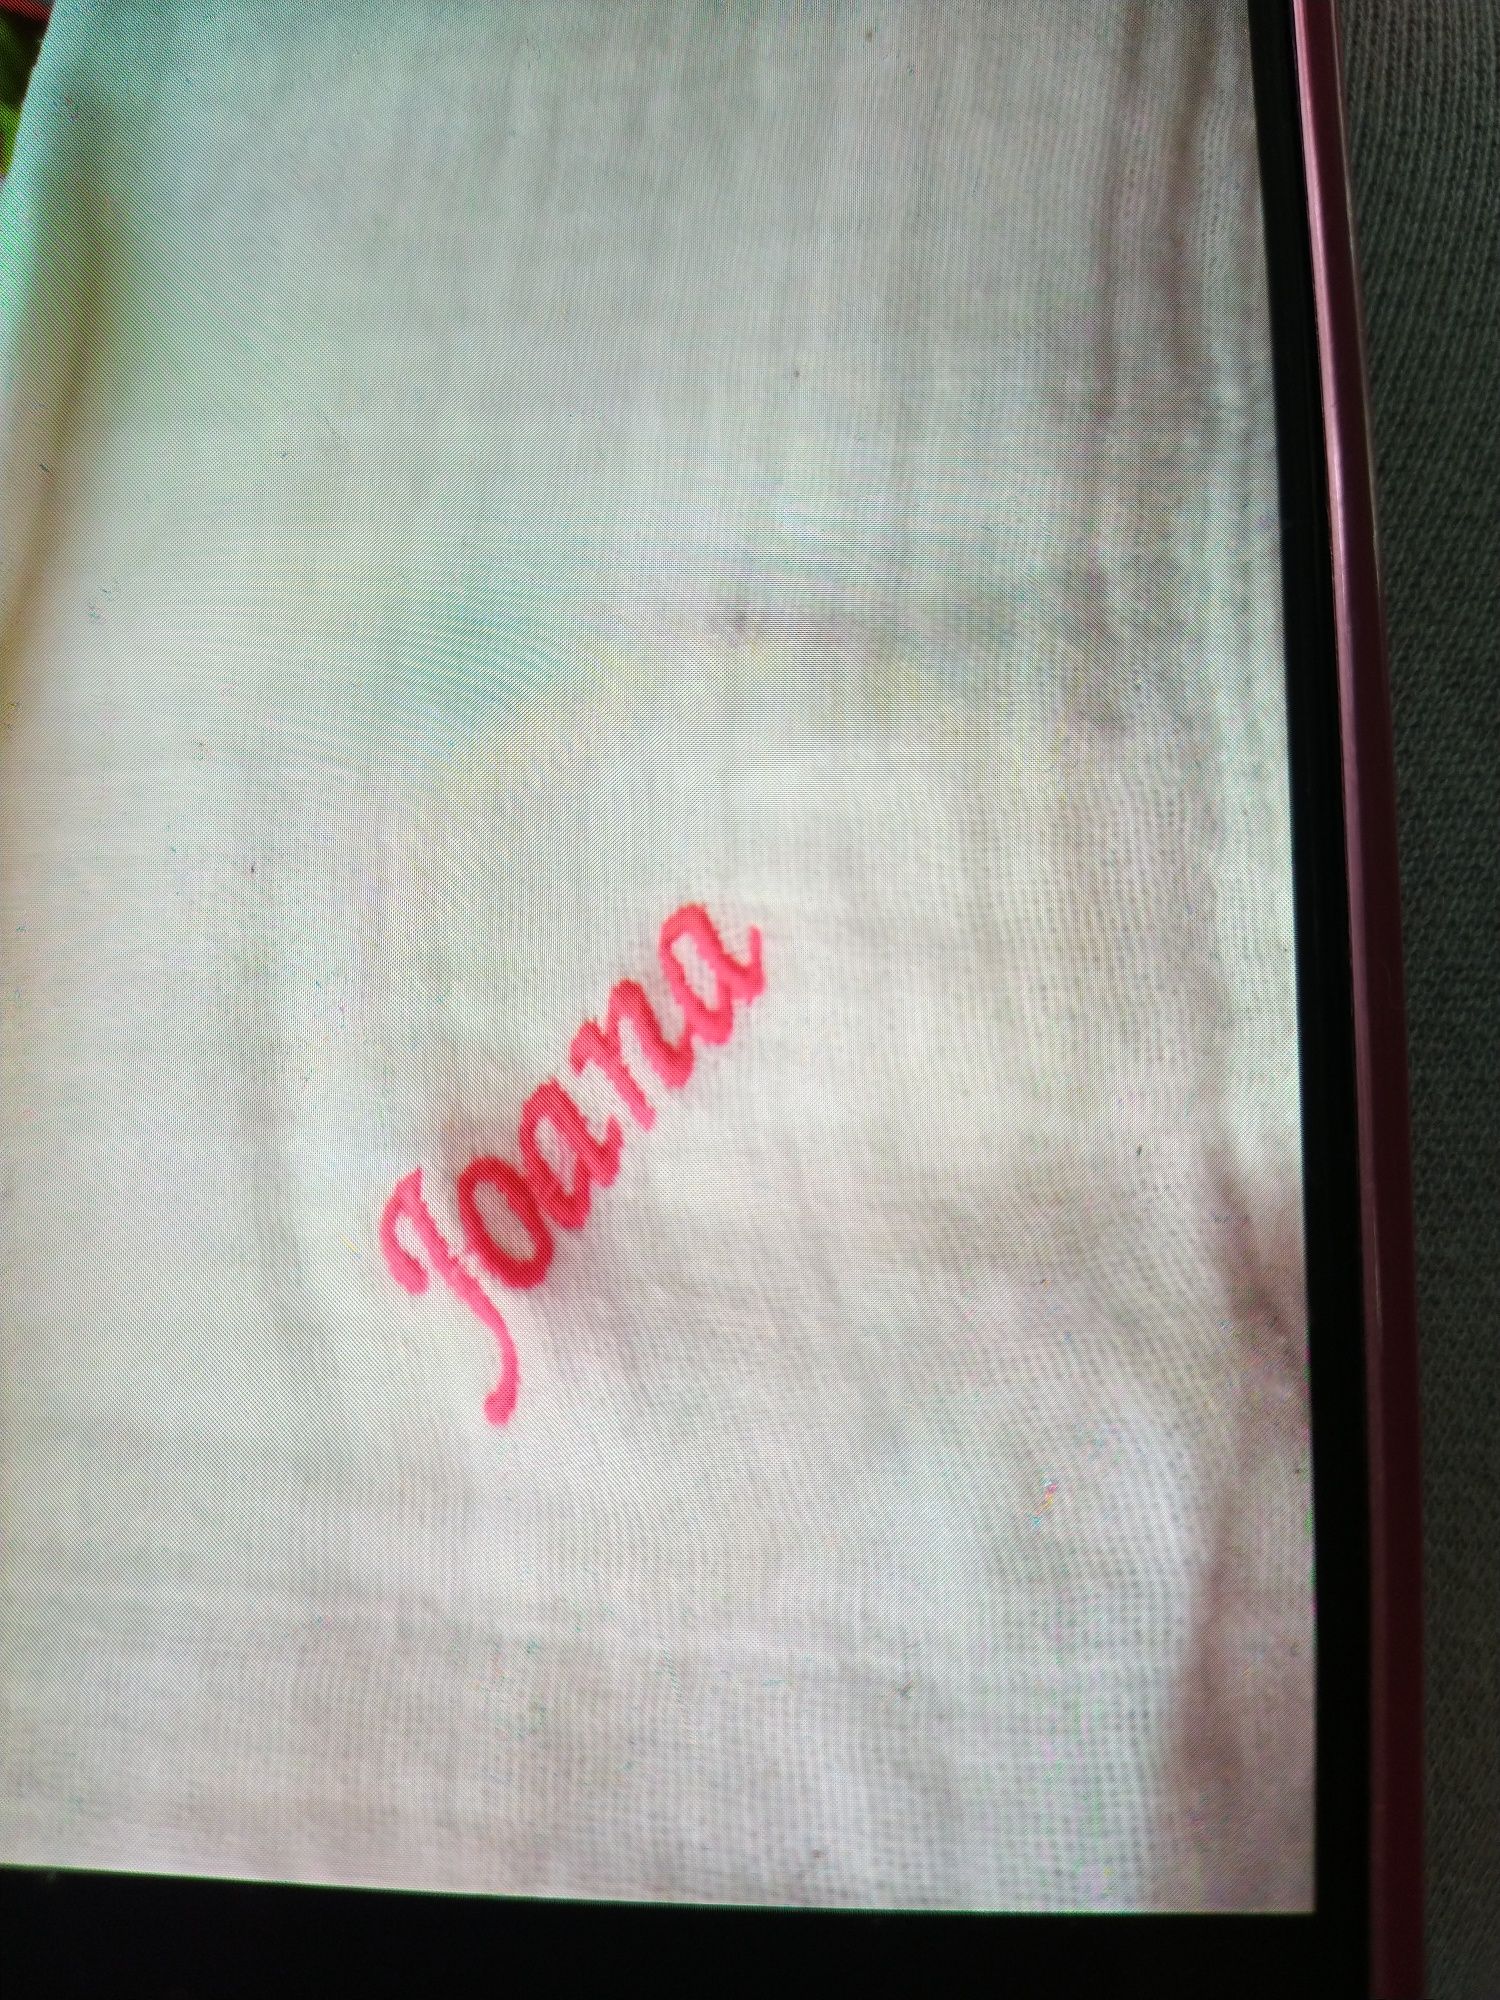 Fraldas de pano com o nome Joana gravado